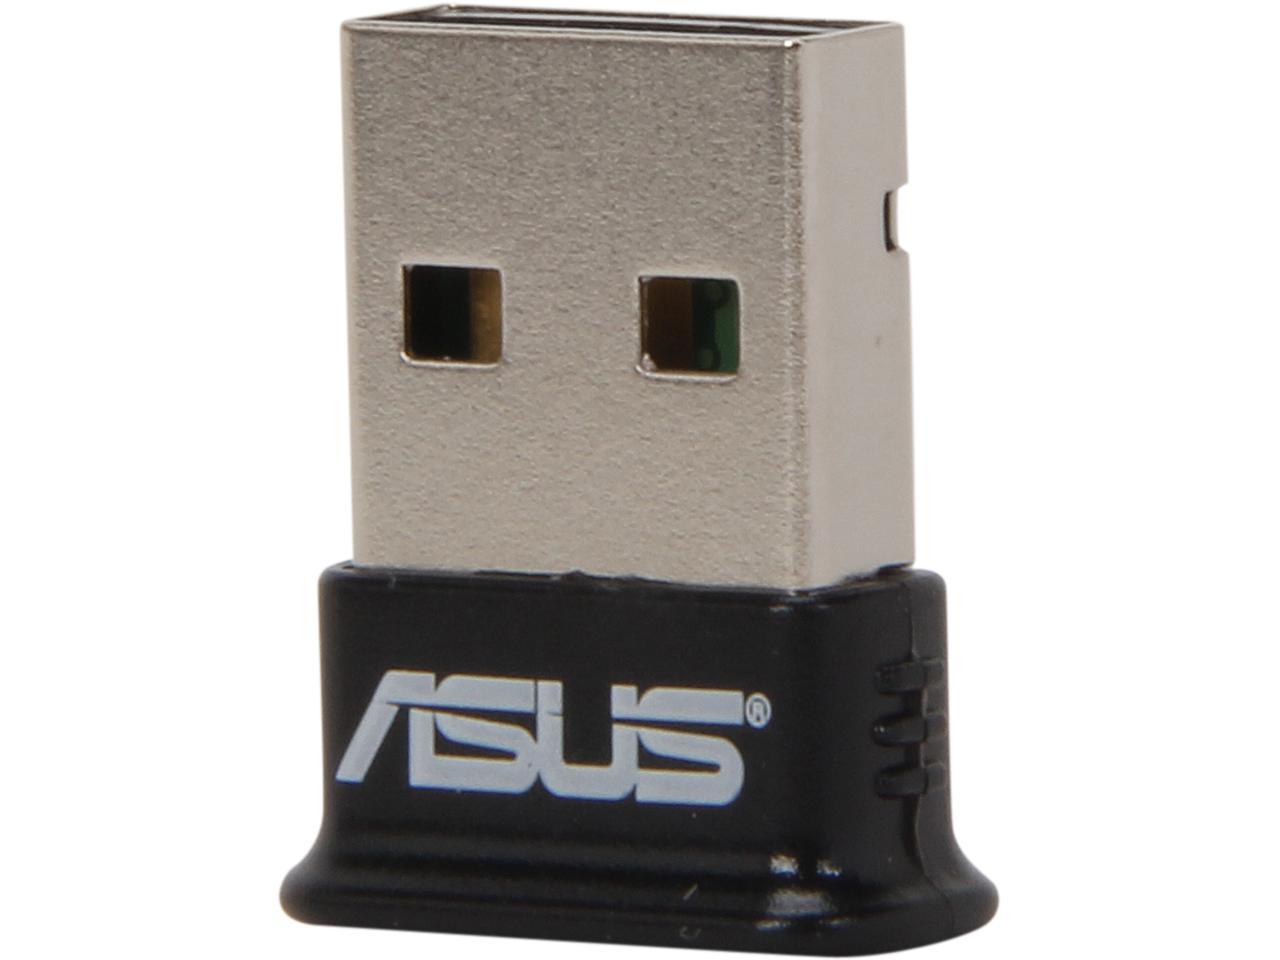 ASUS USB Adapter w/ Bluetooth Receiver - Newegg.com